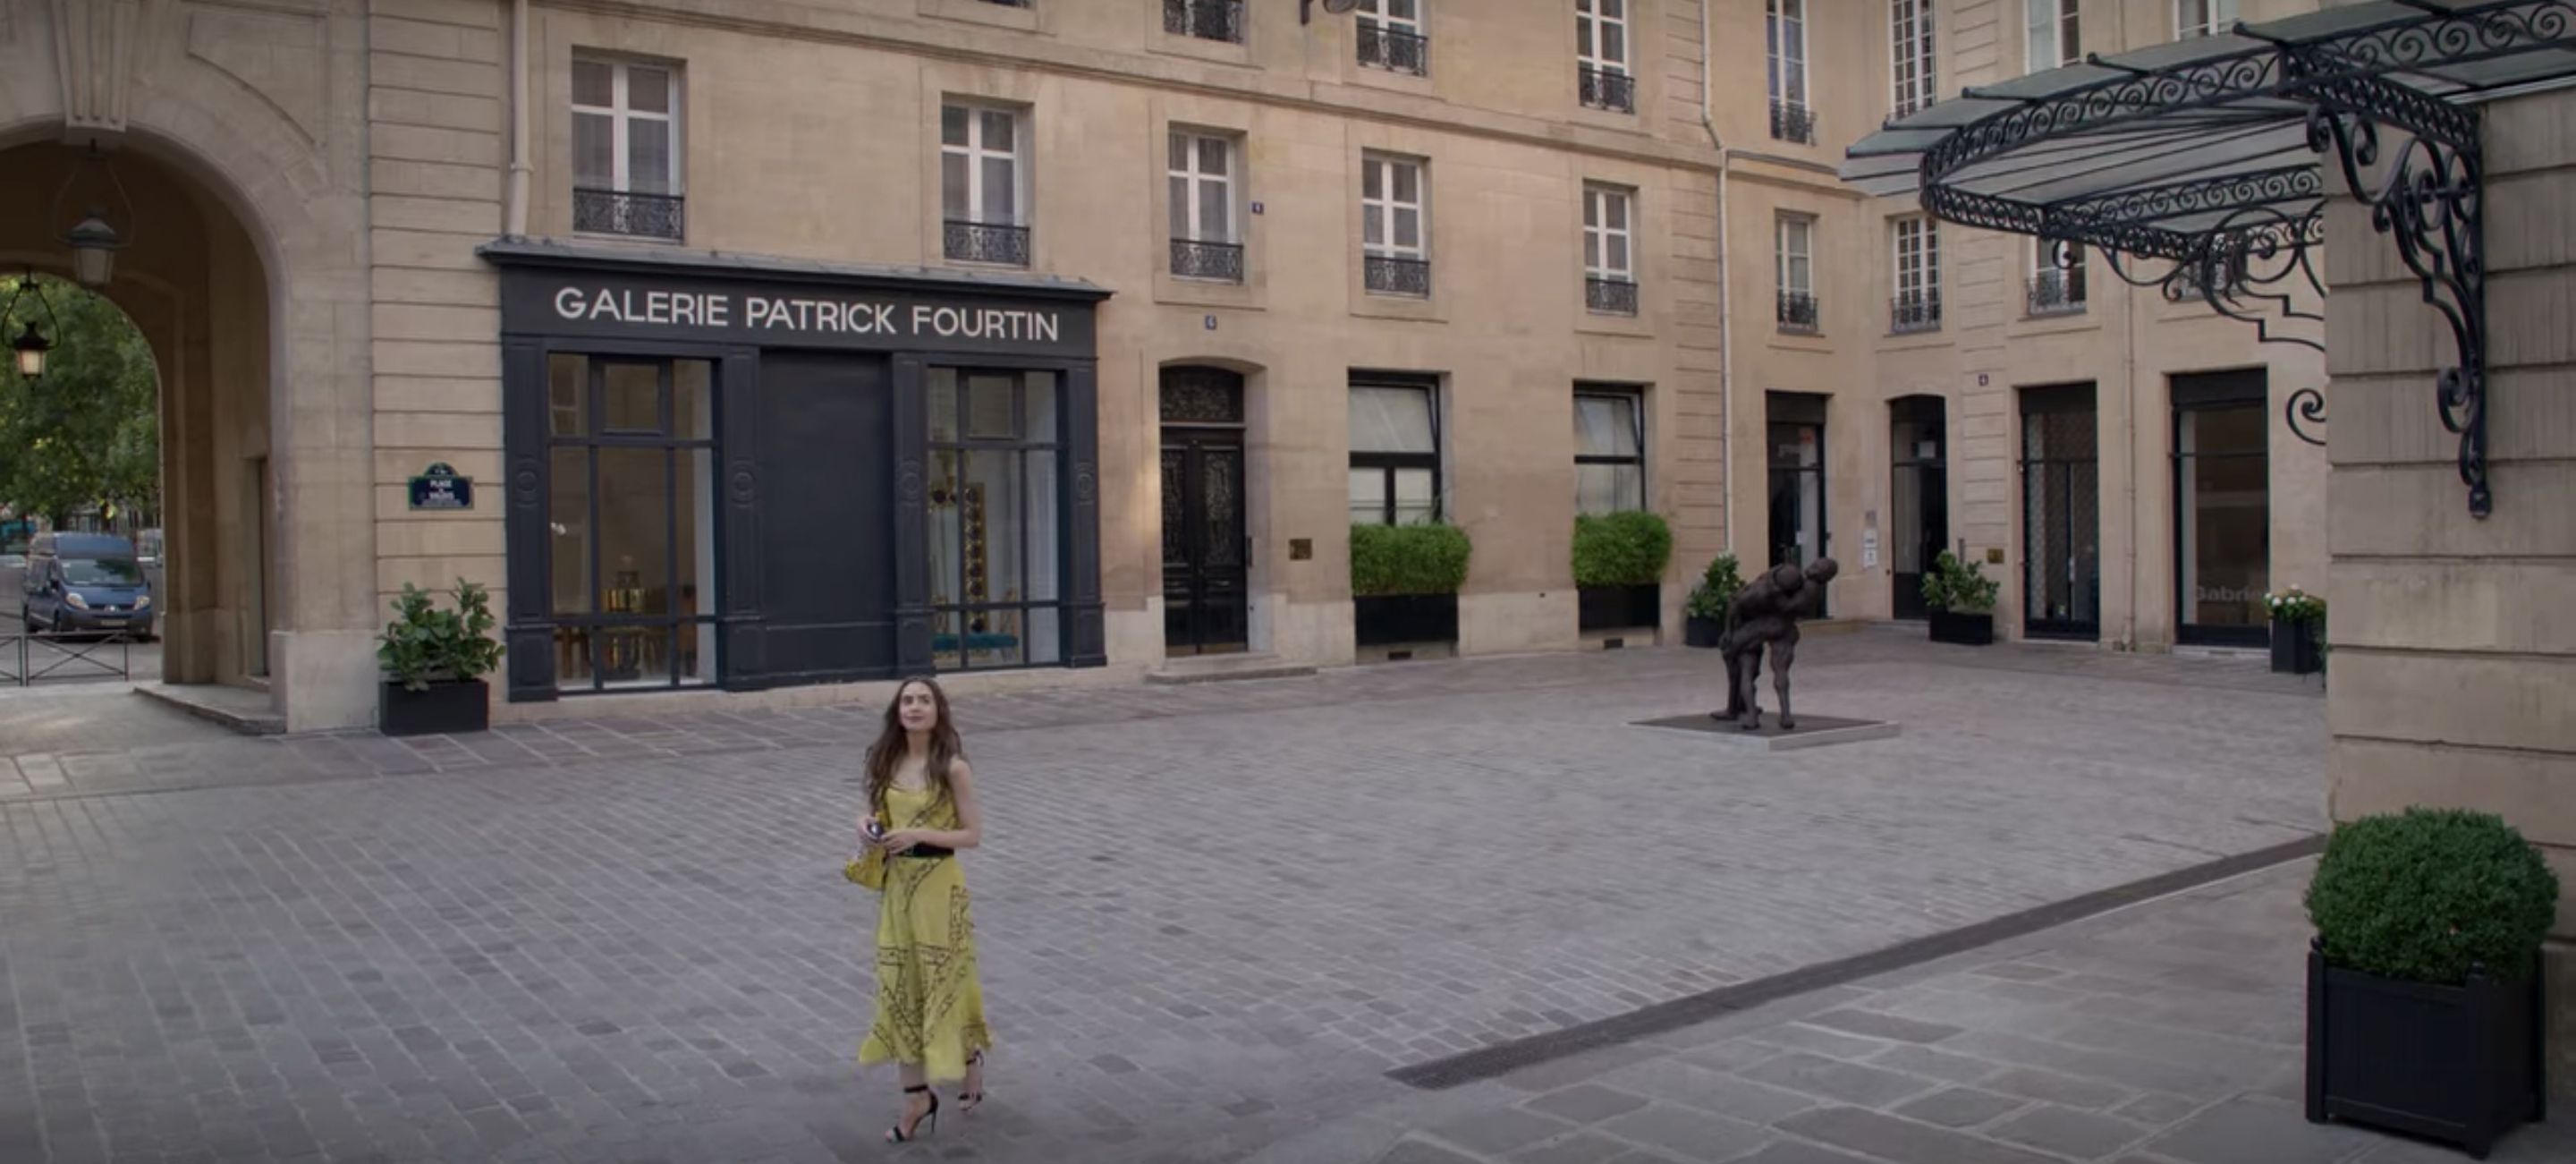 ¿Dónde se filmó "Emily en París" de Netflix?